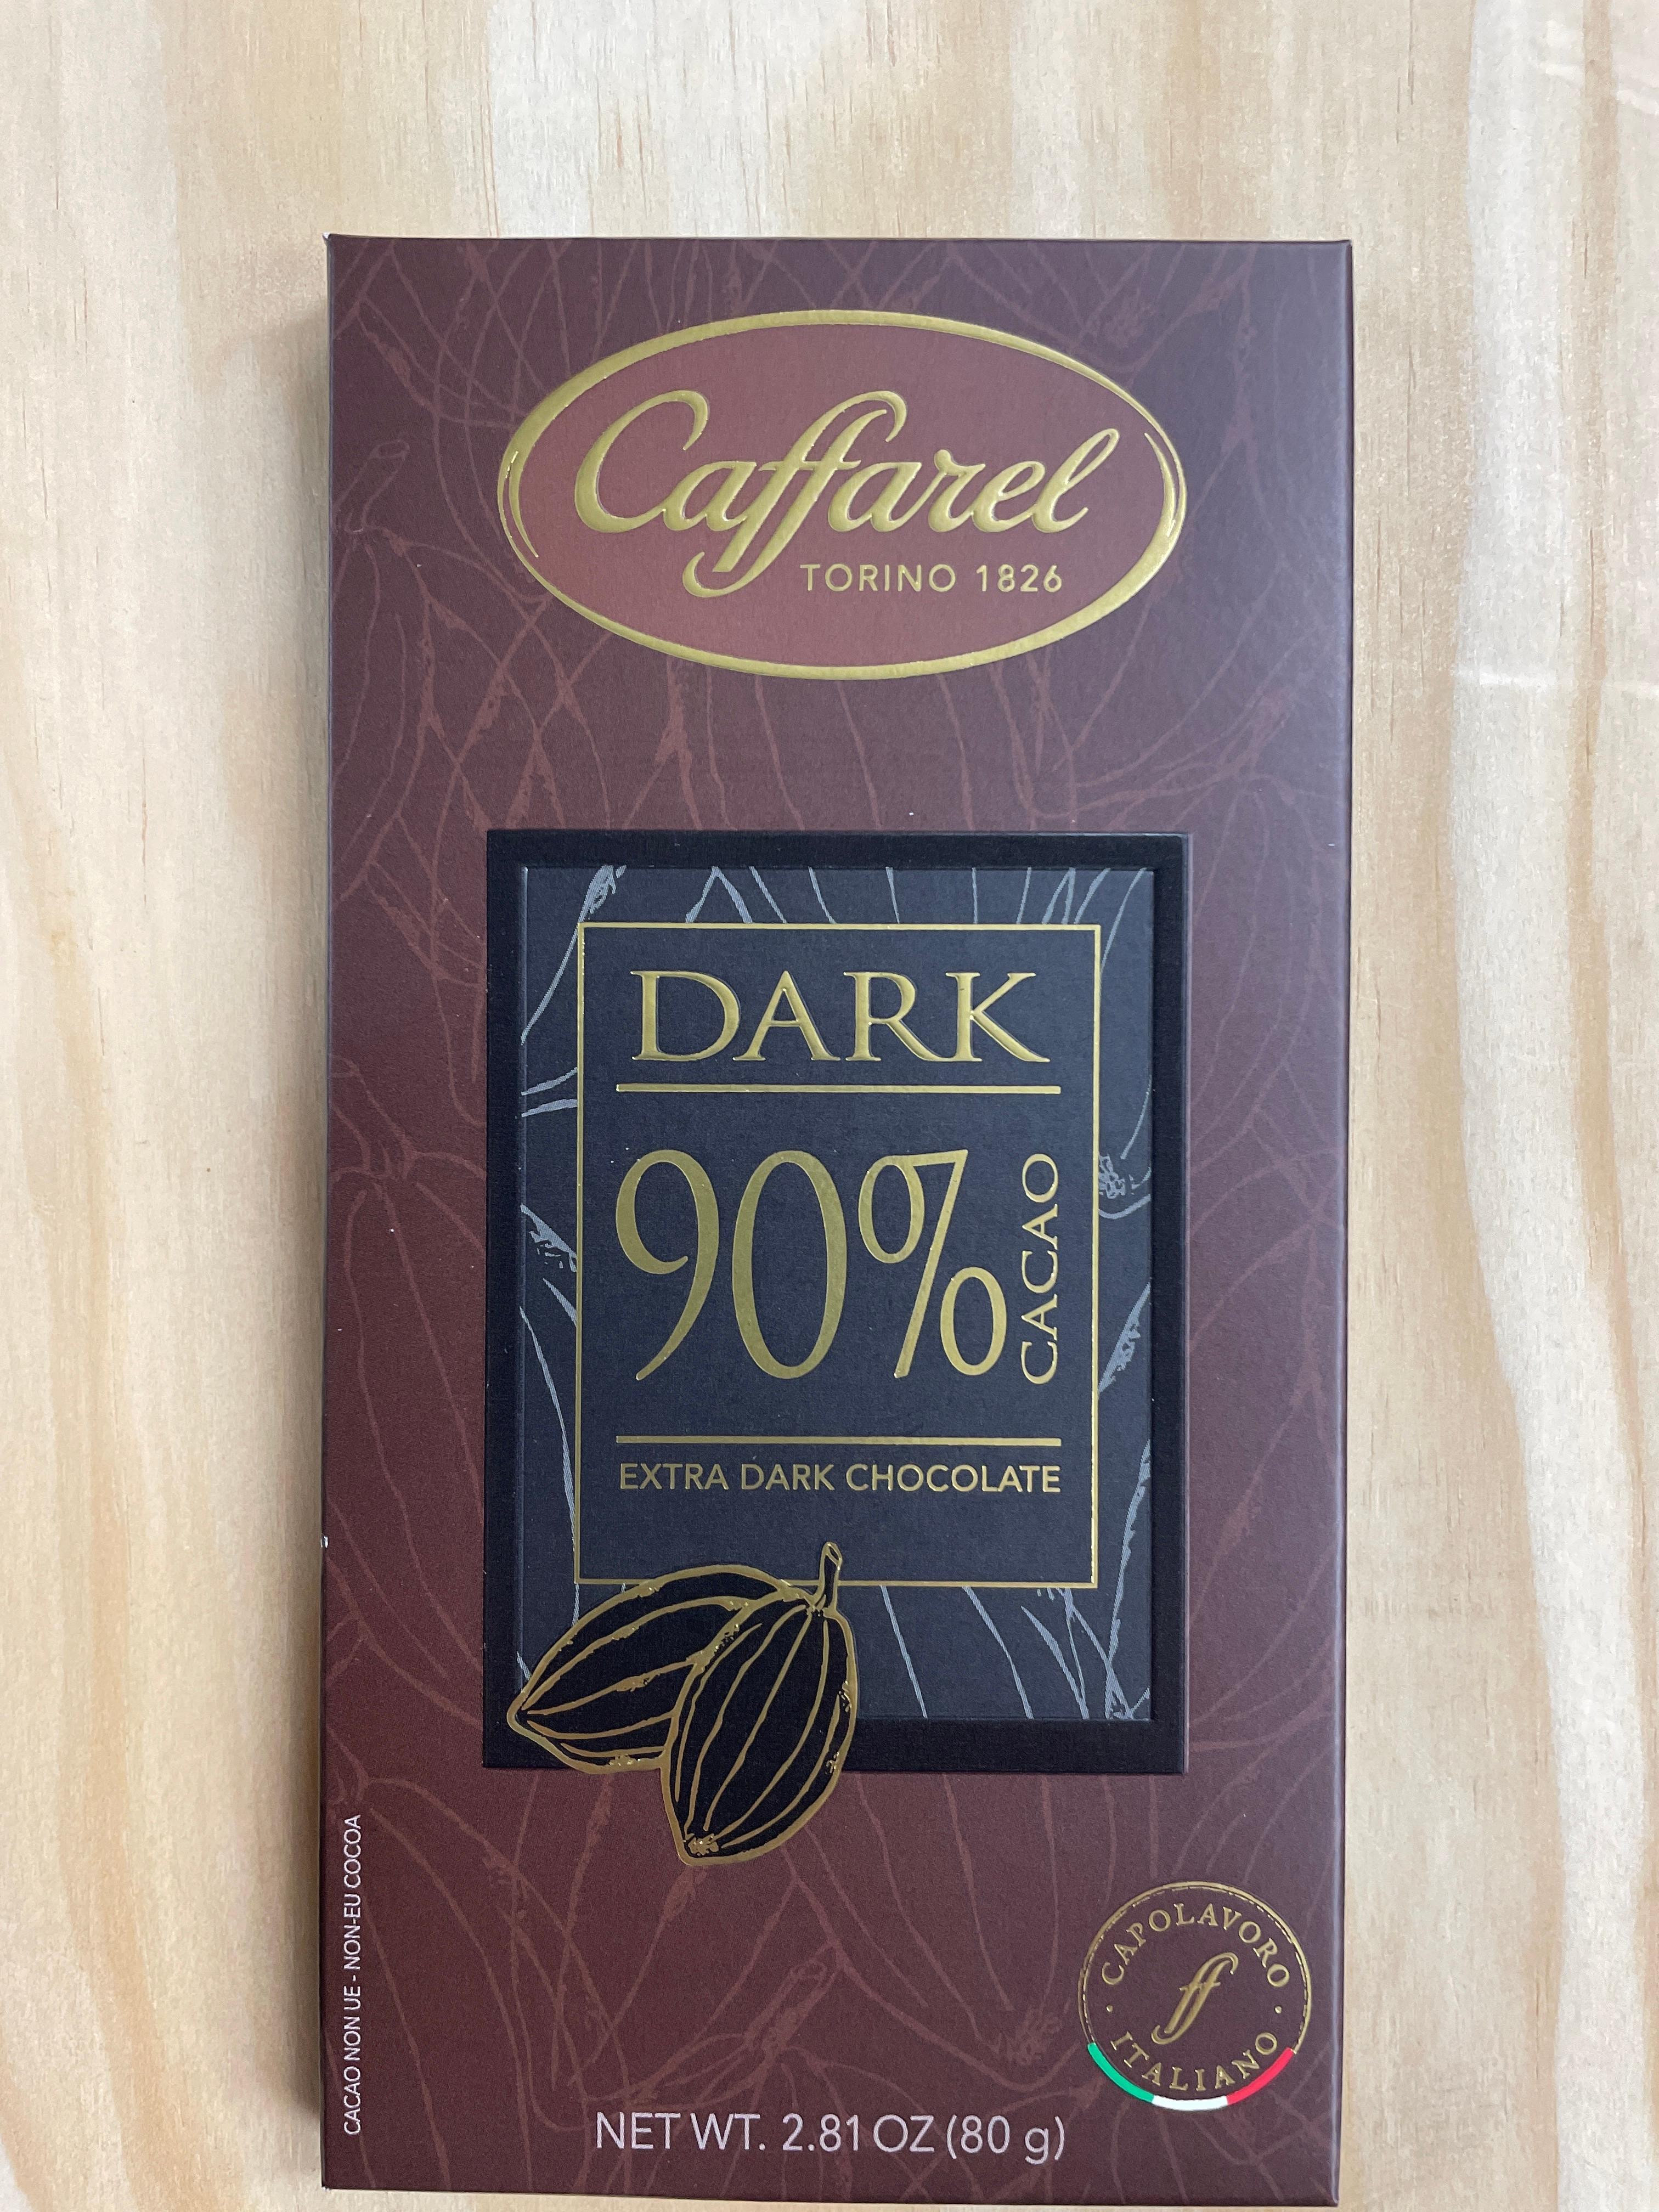 Caffarel extra dark 90% Bar 80gr